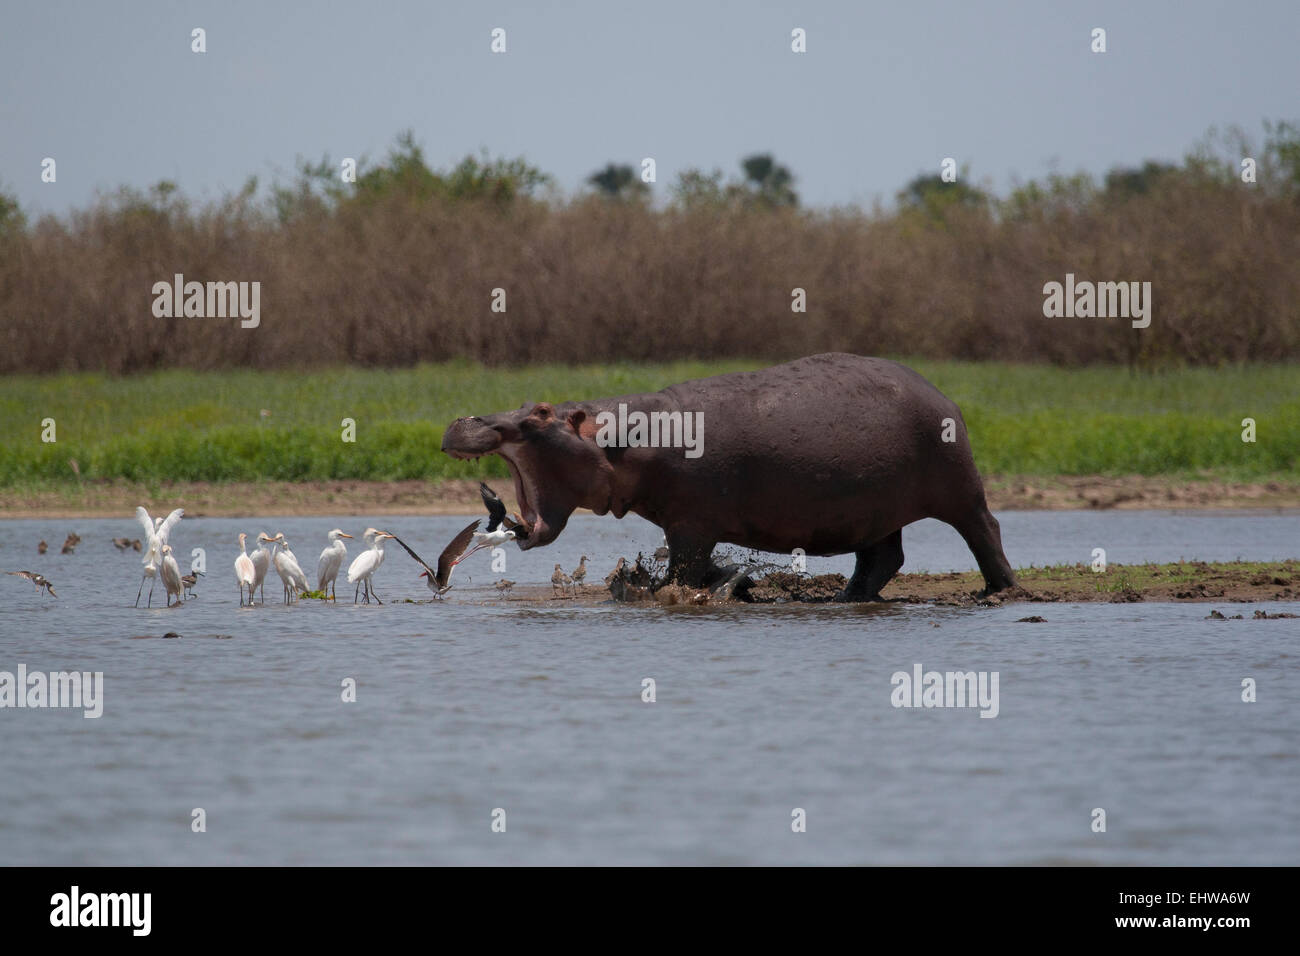 La charge d'hippopotames dans l'eau, ressemble à ce qu'il est au sujet d'avaler quelques oiseaux. Banque D'Images